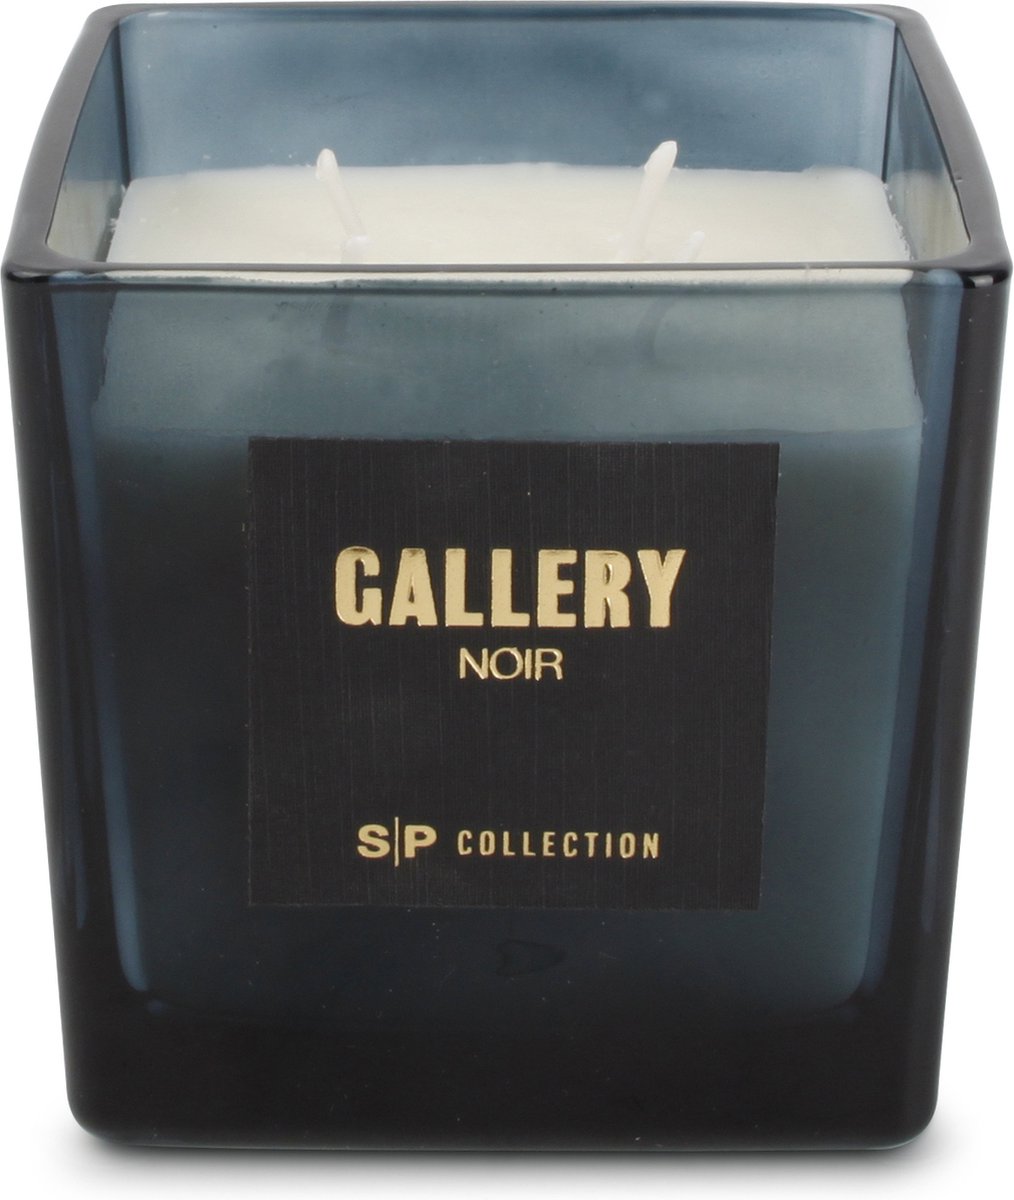 Salt&Pepper - Geurkaars - 550g - Noir - Gallery